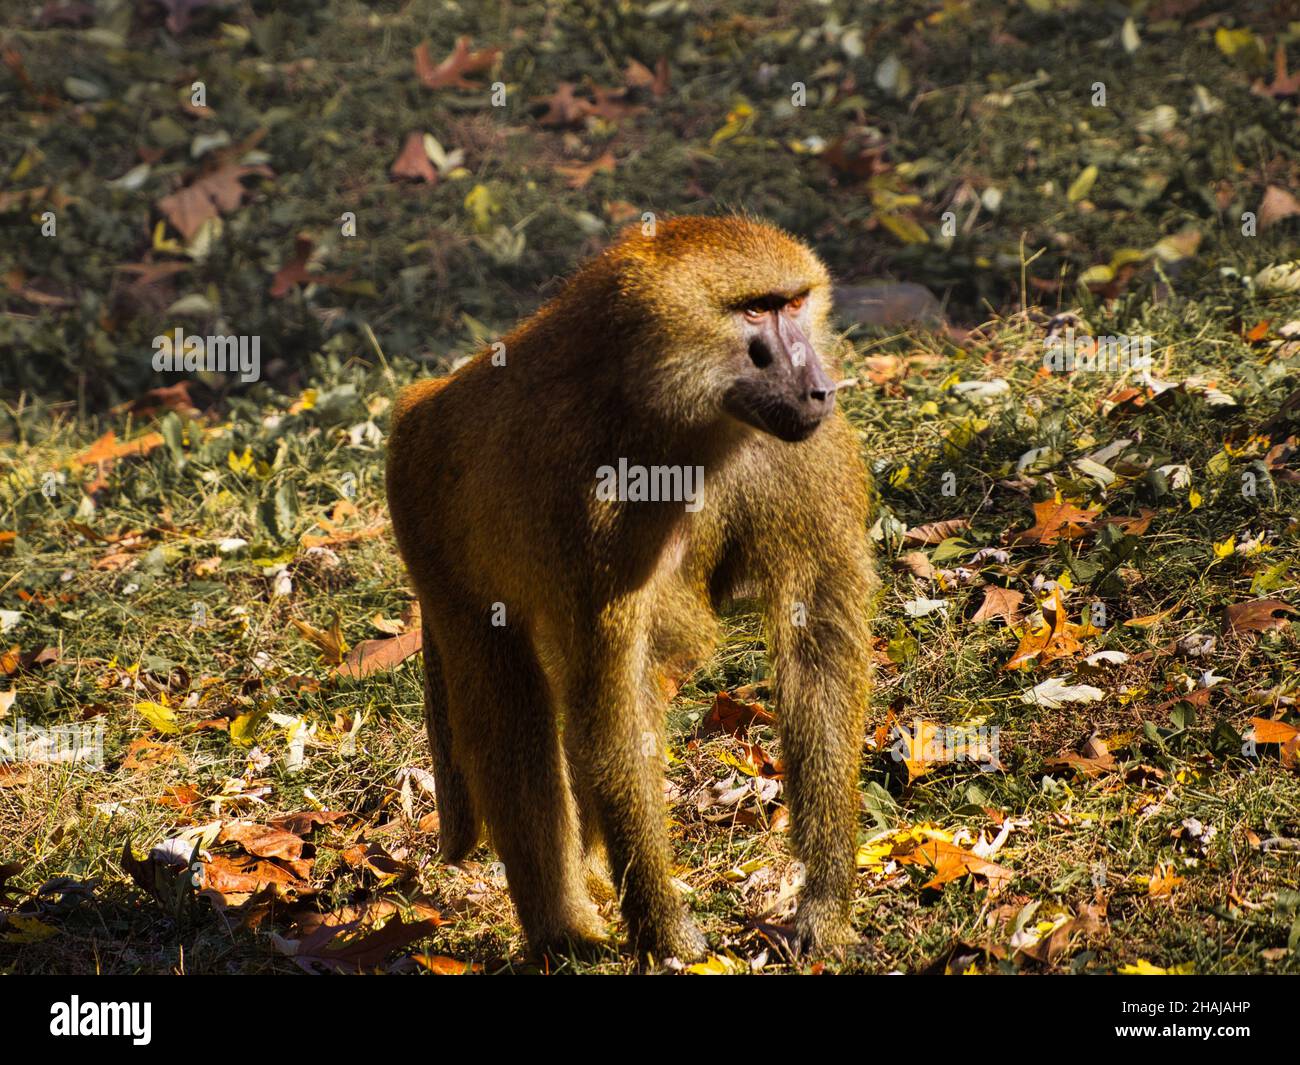 Guinea baboon (Papio papio) monkey in autumn. Kansas City Zoo, Missouri, USA Stock Photo